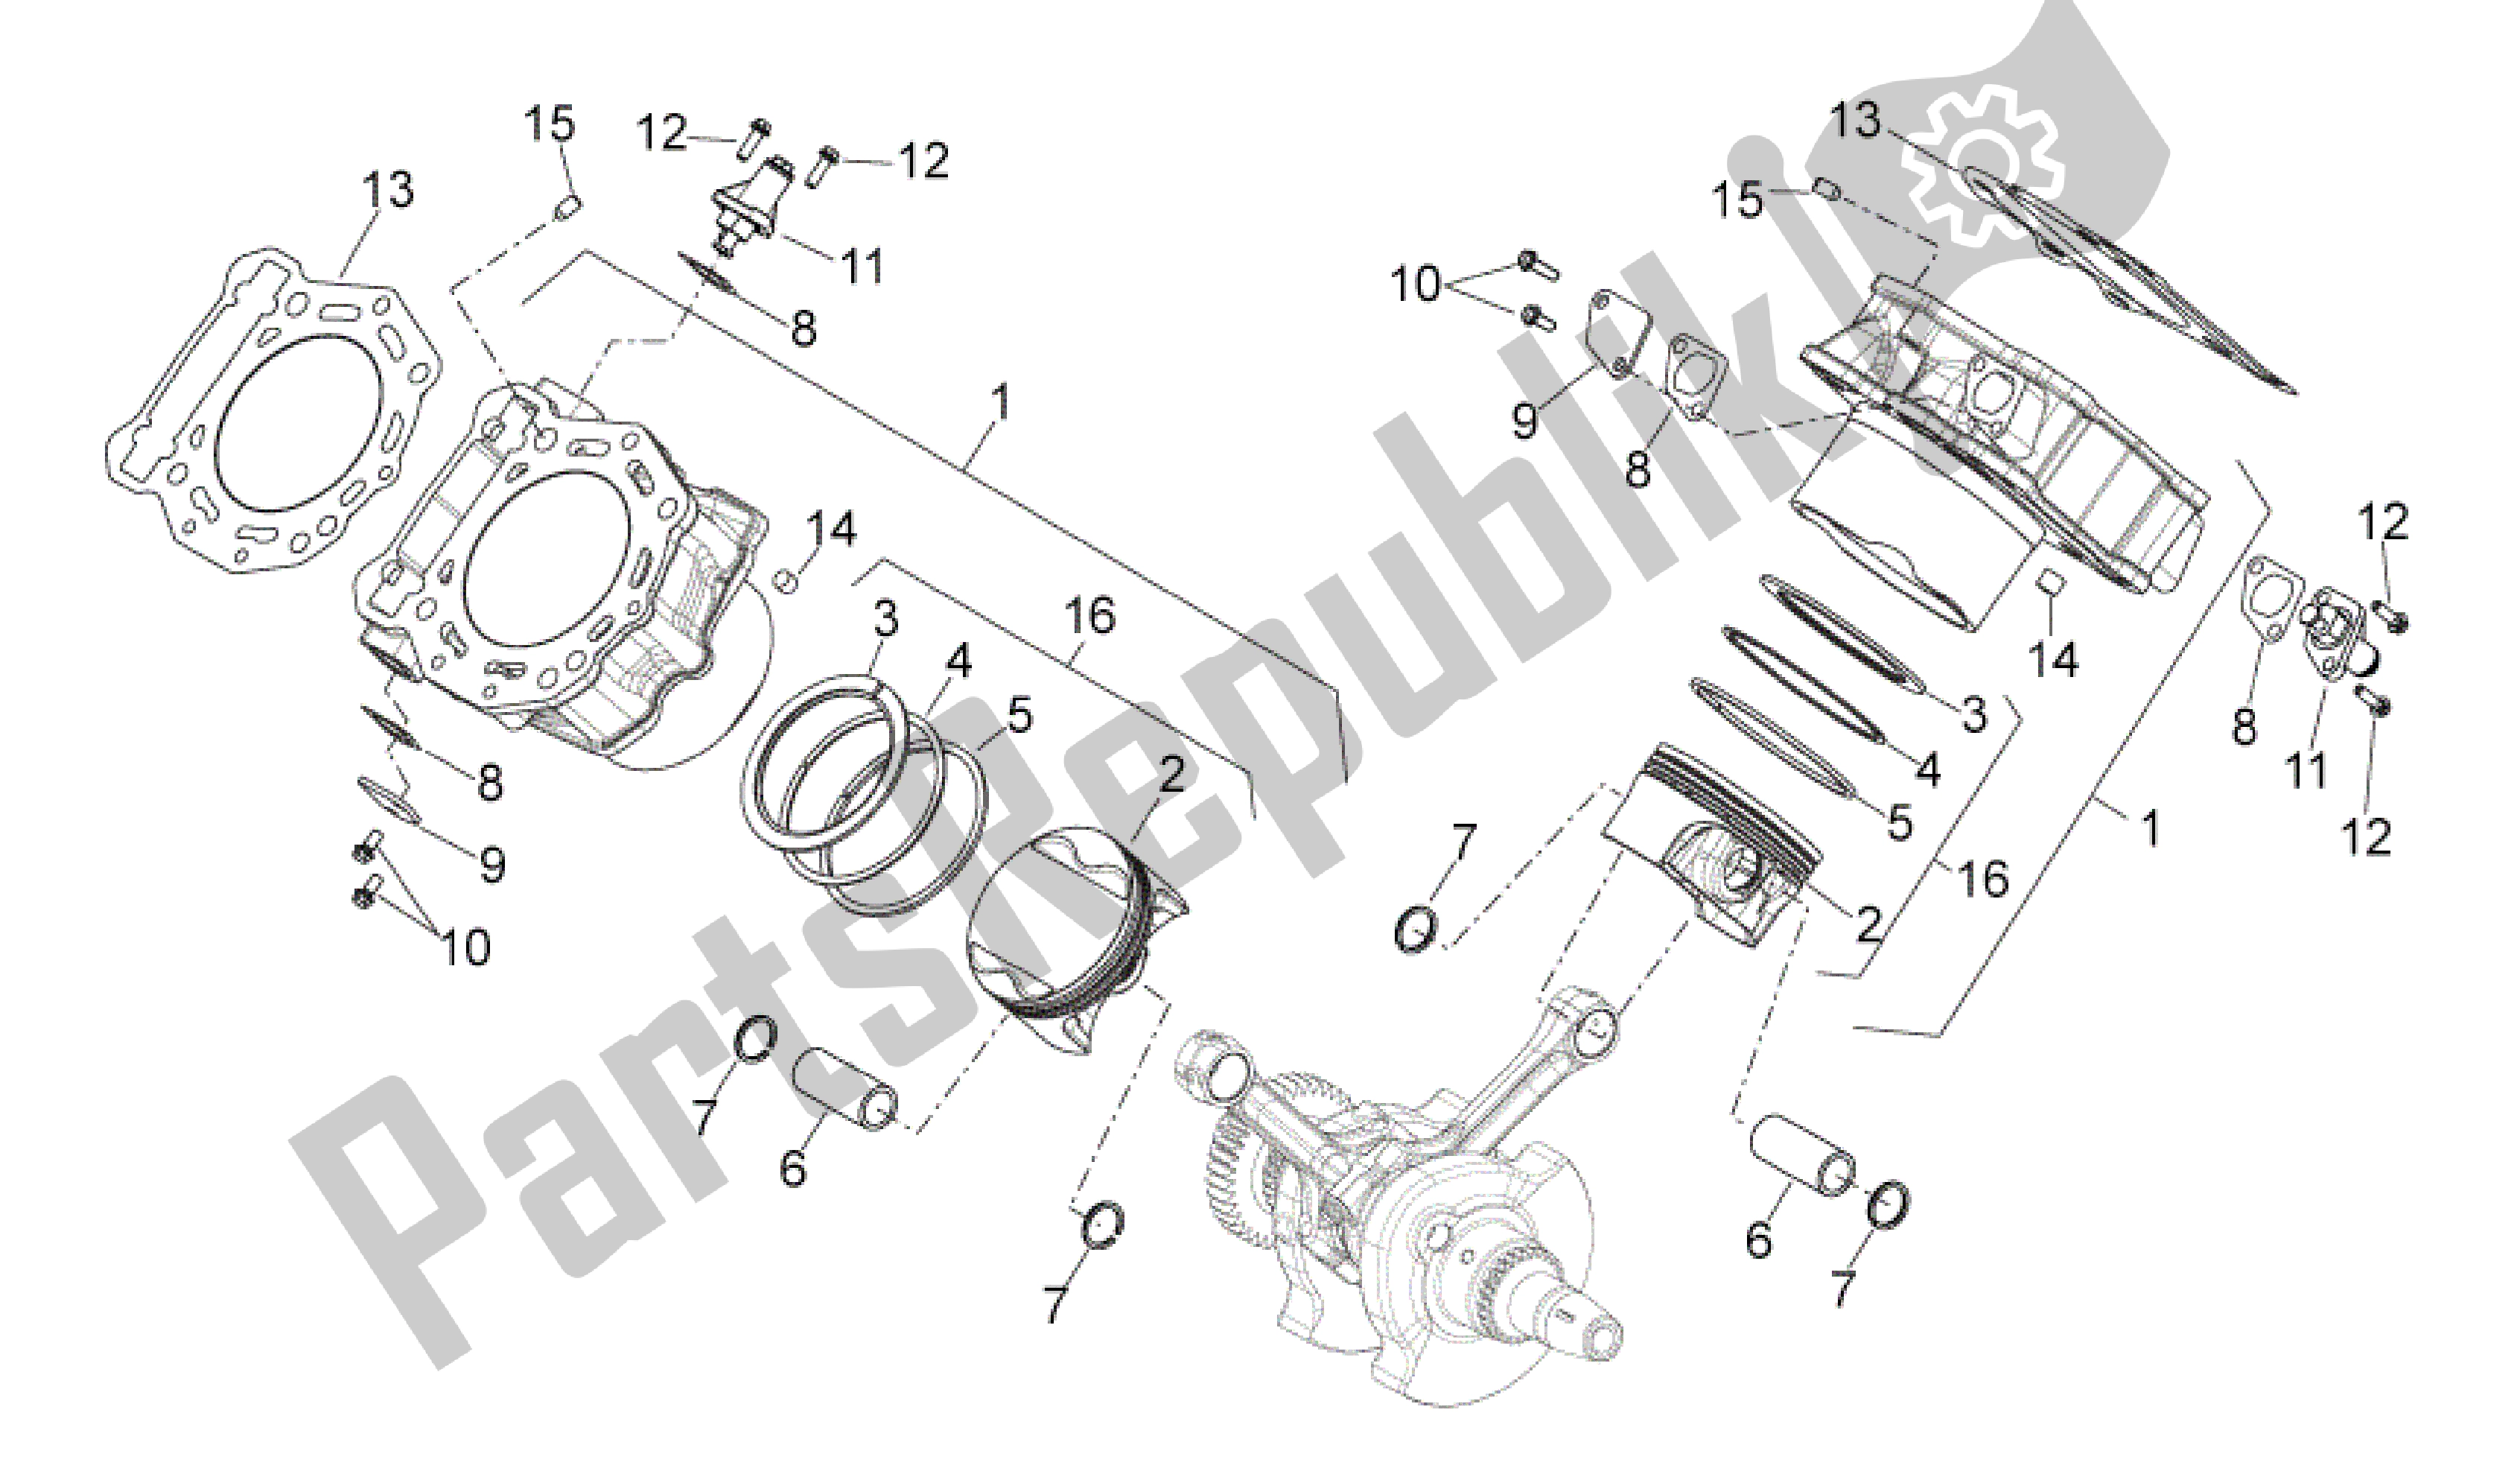 Toutes les pièces pour le Cylindre Avec Piston du Aprilia Shiver 750 2010 - 2013